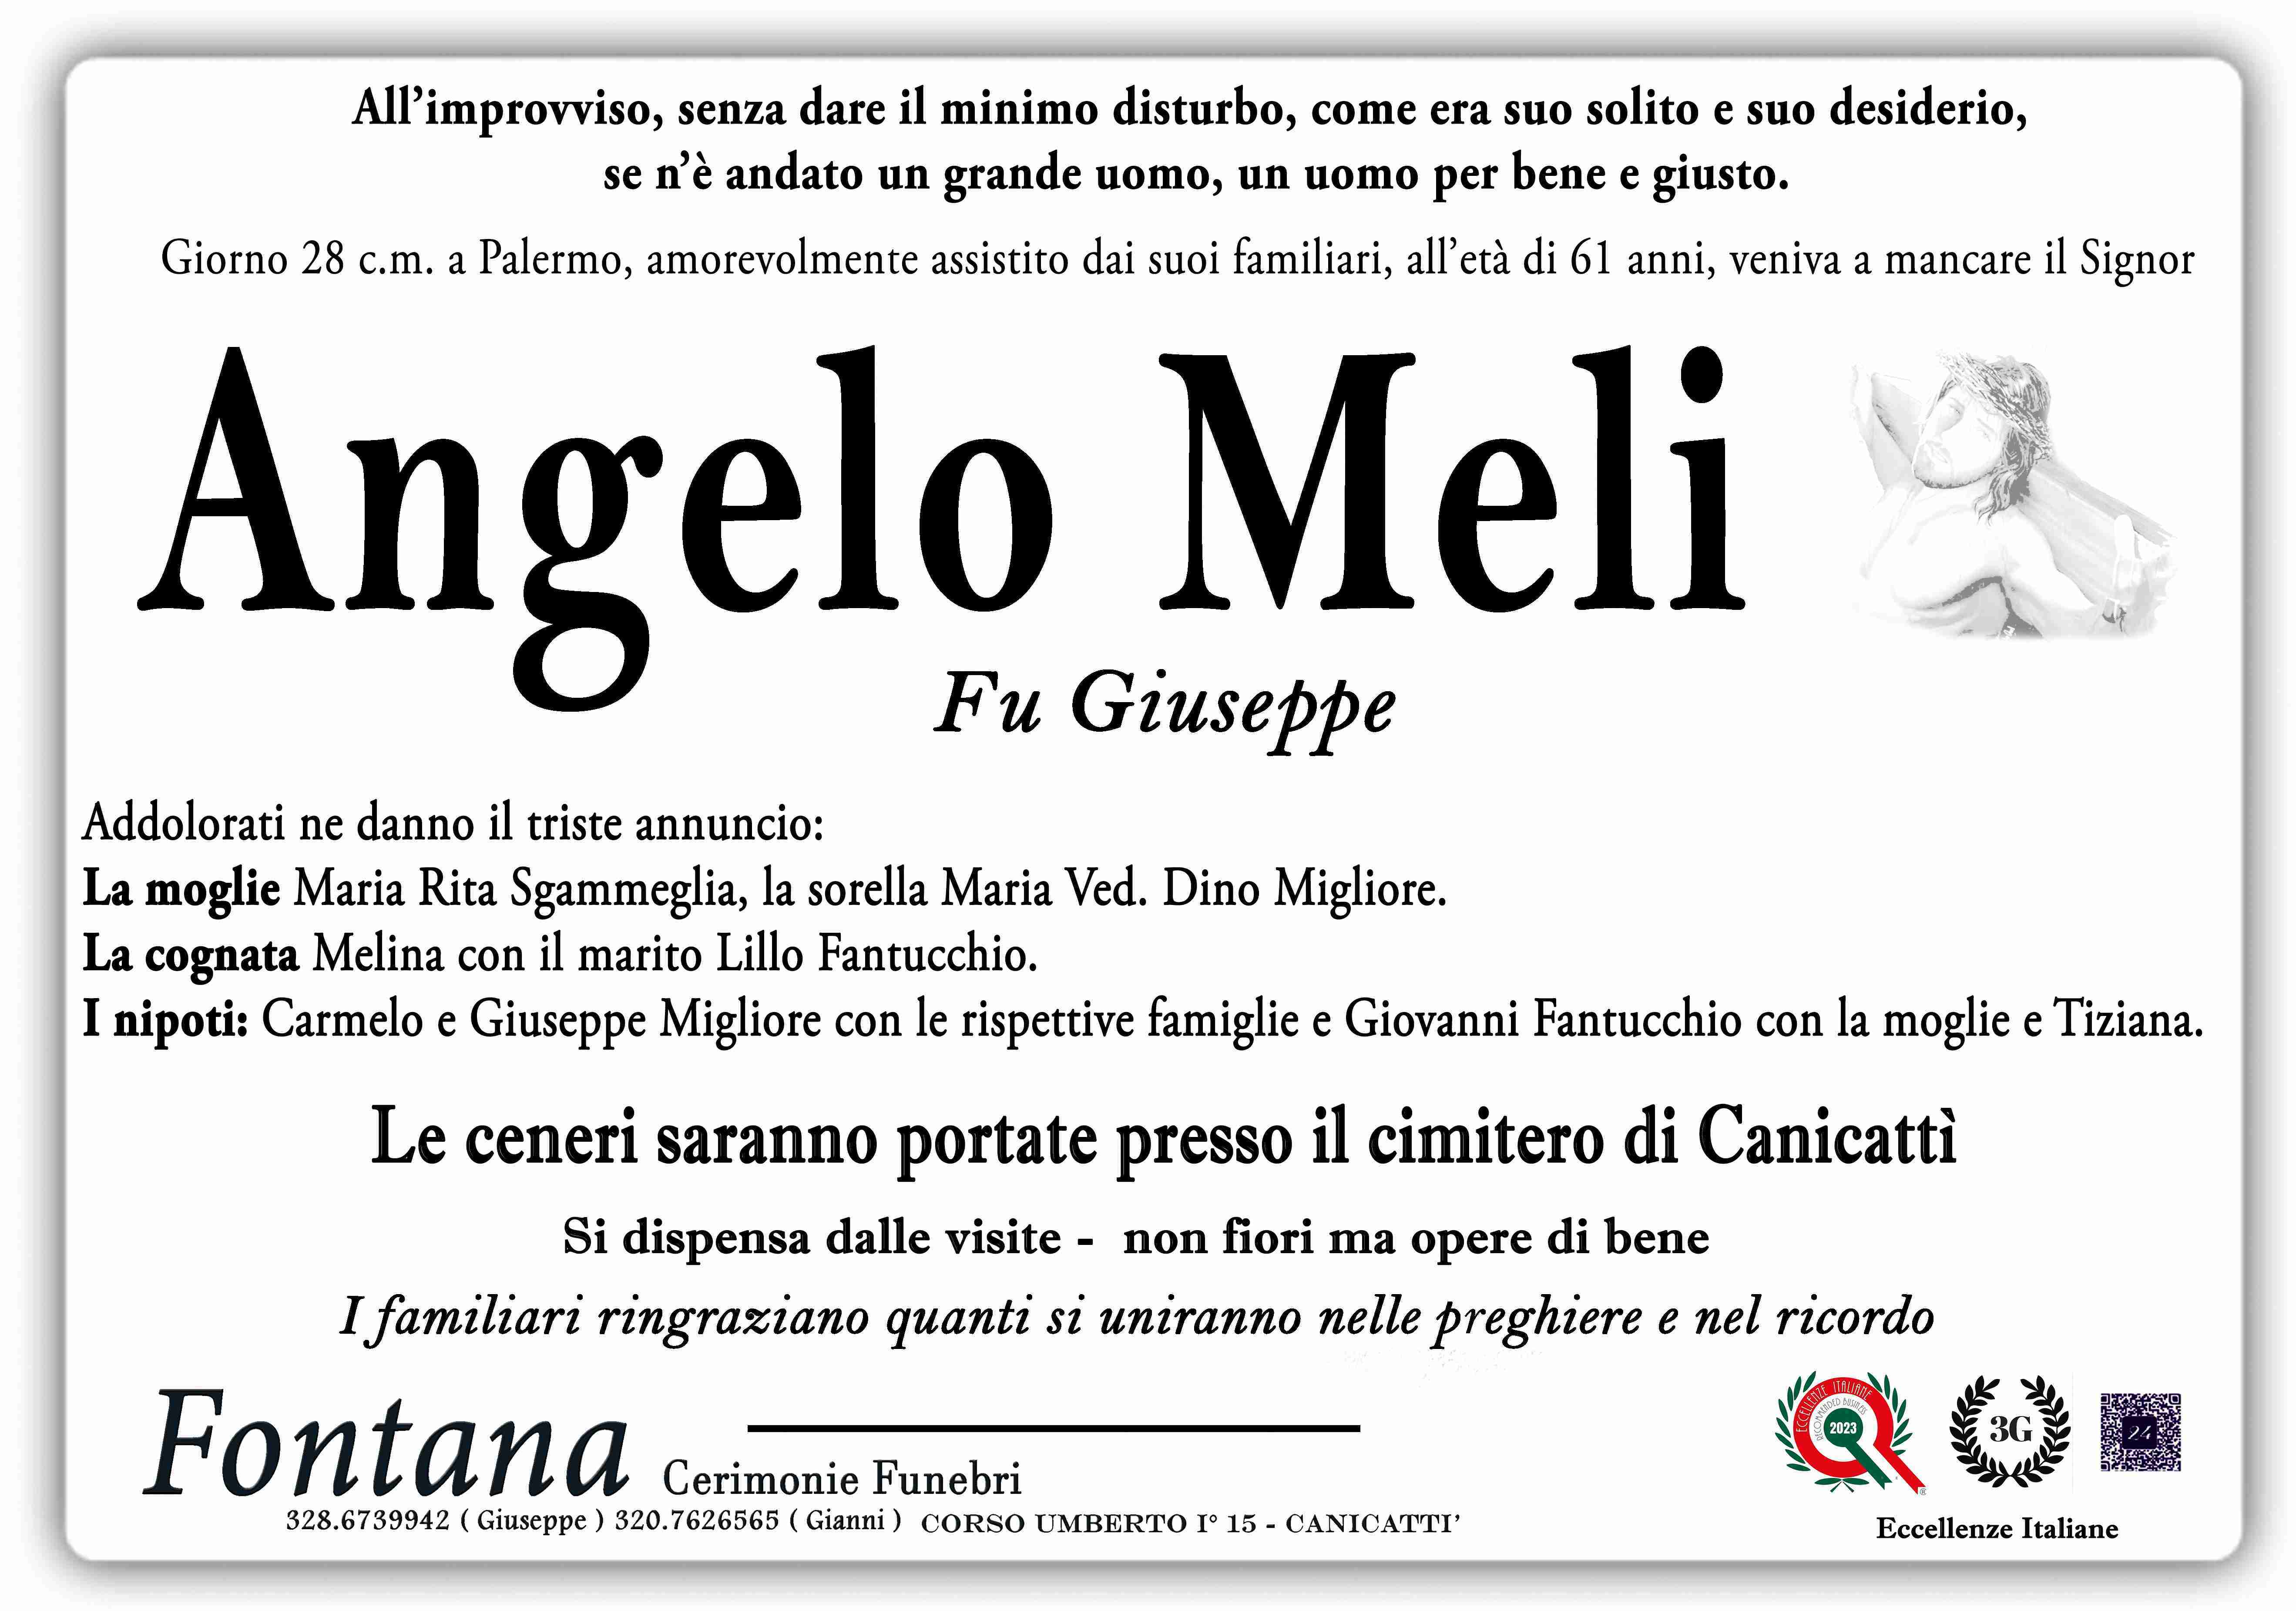 Angelo Meli